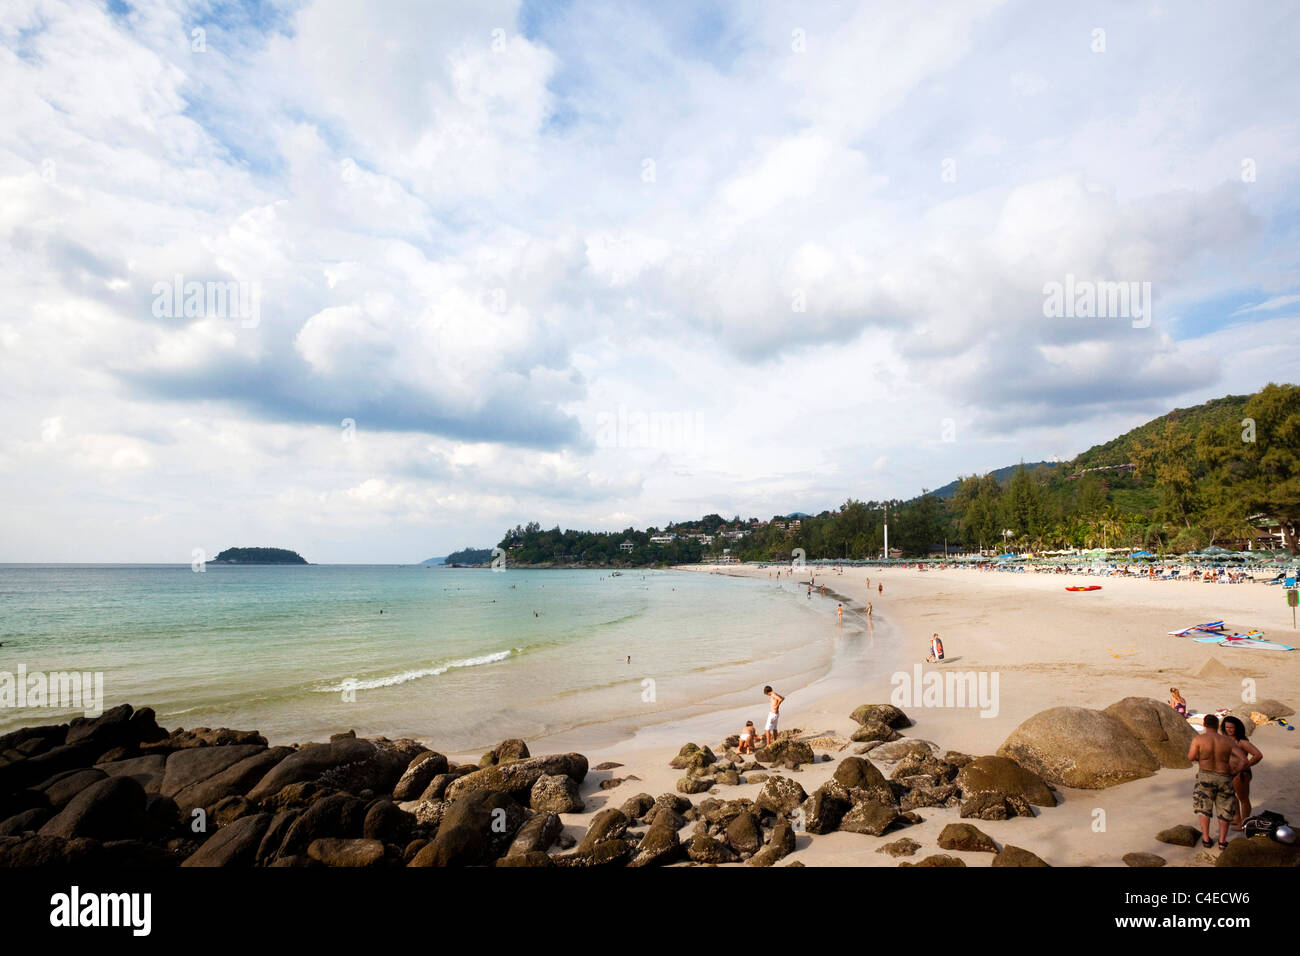 Kata Noi beach, Phuket, Thailand Stock Photo